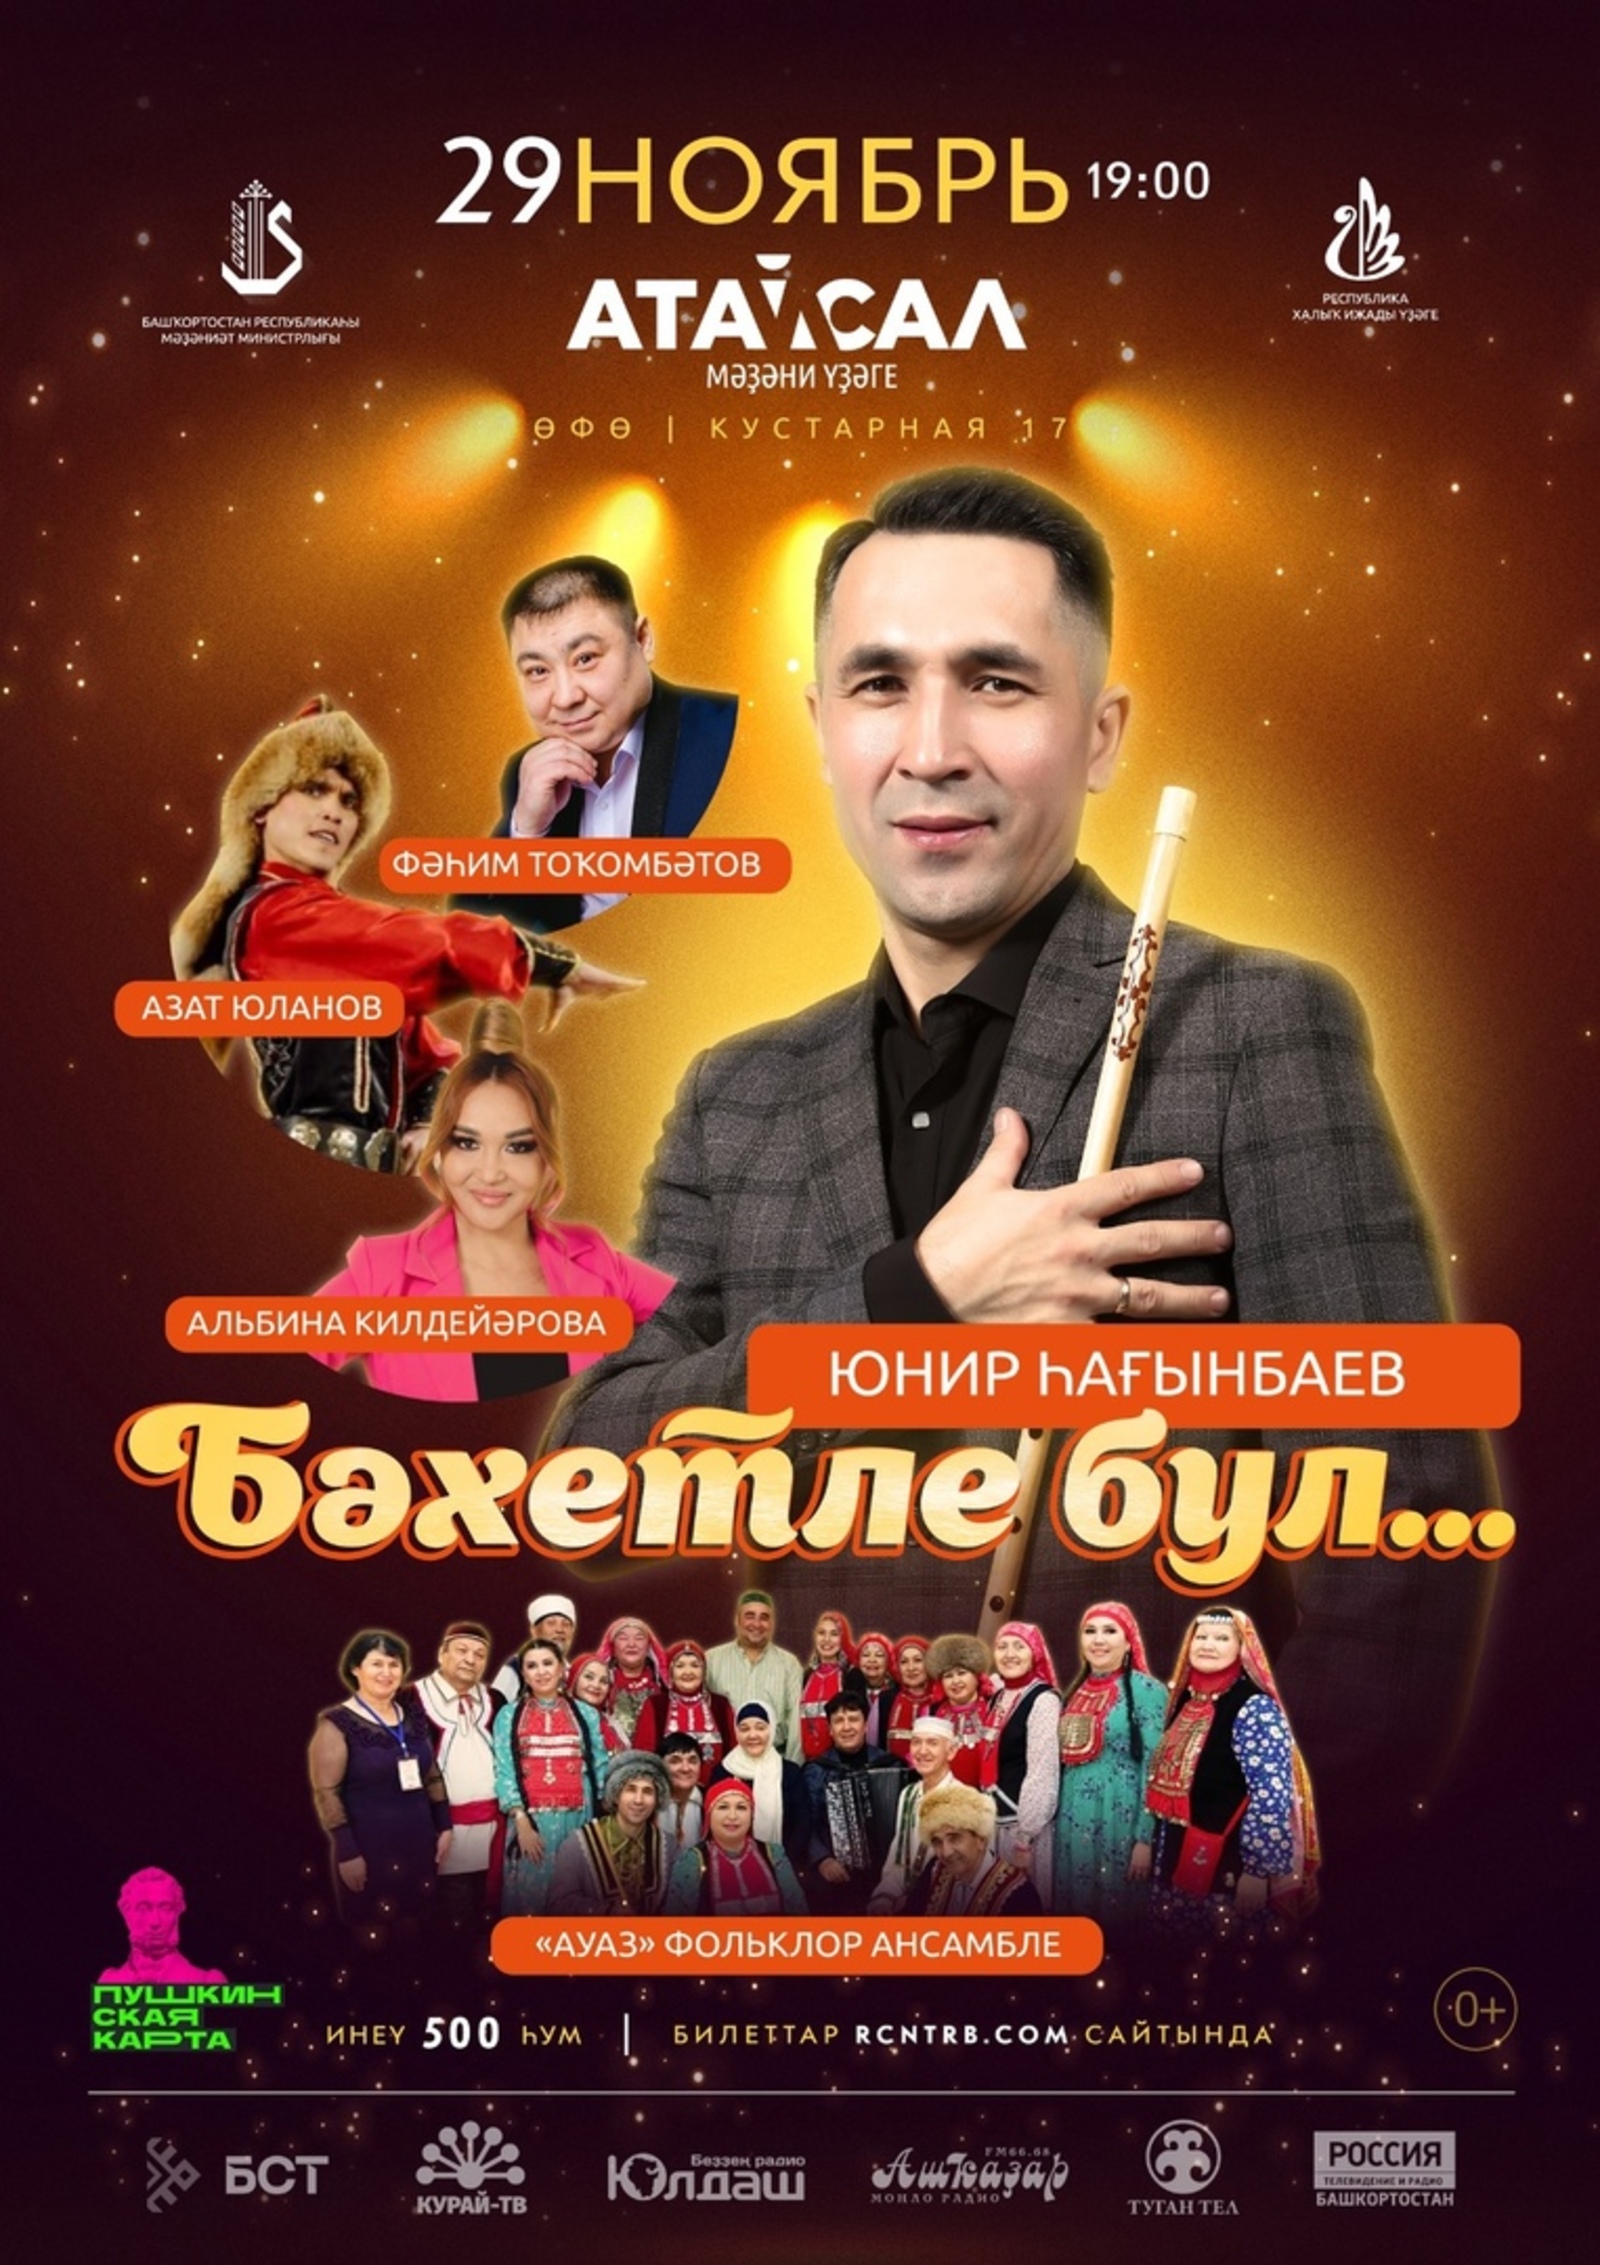 Сольный концерт Юнира Сагинбаева «Бәхетле бул» приглашает всех желающих!